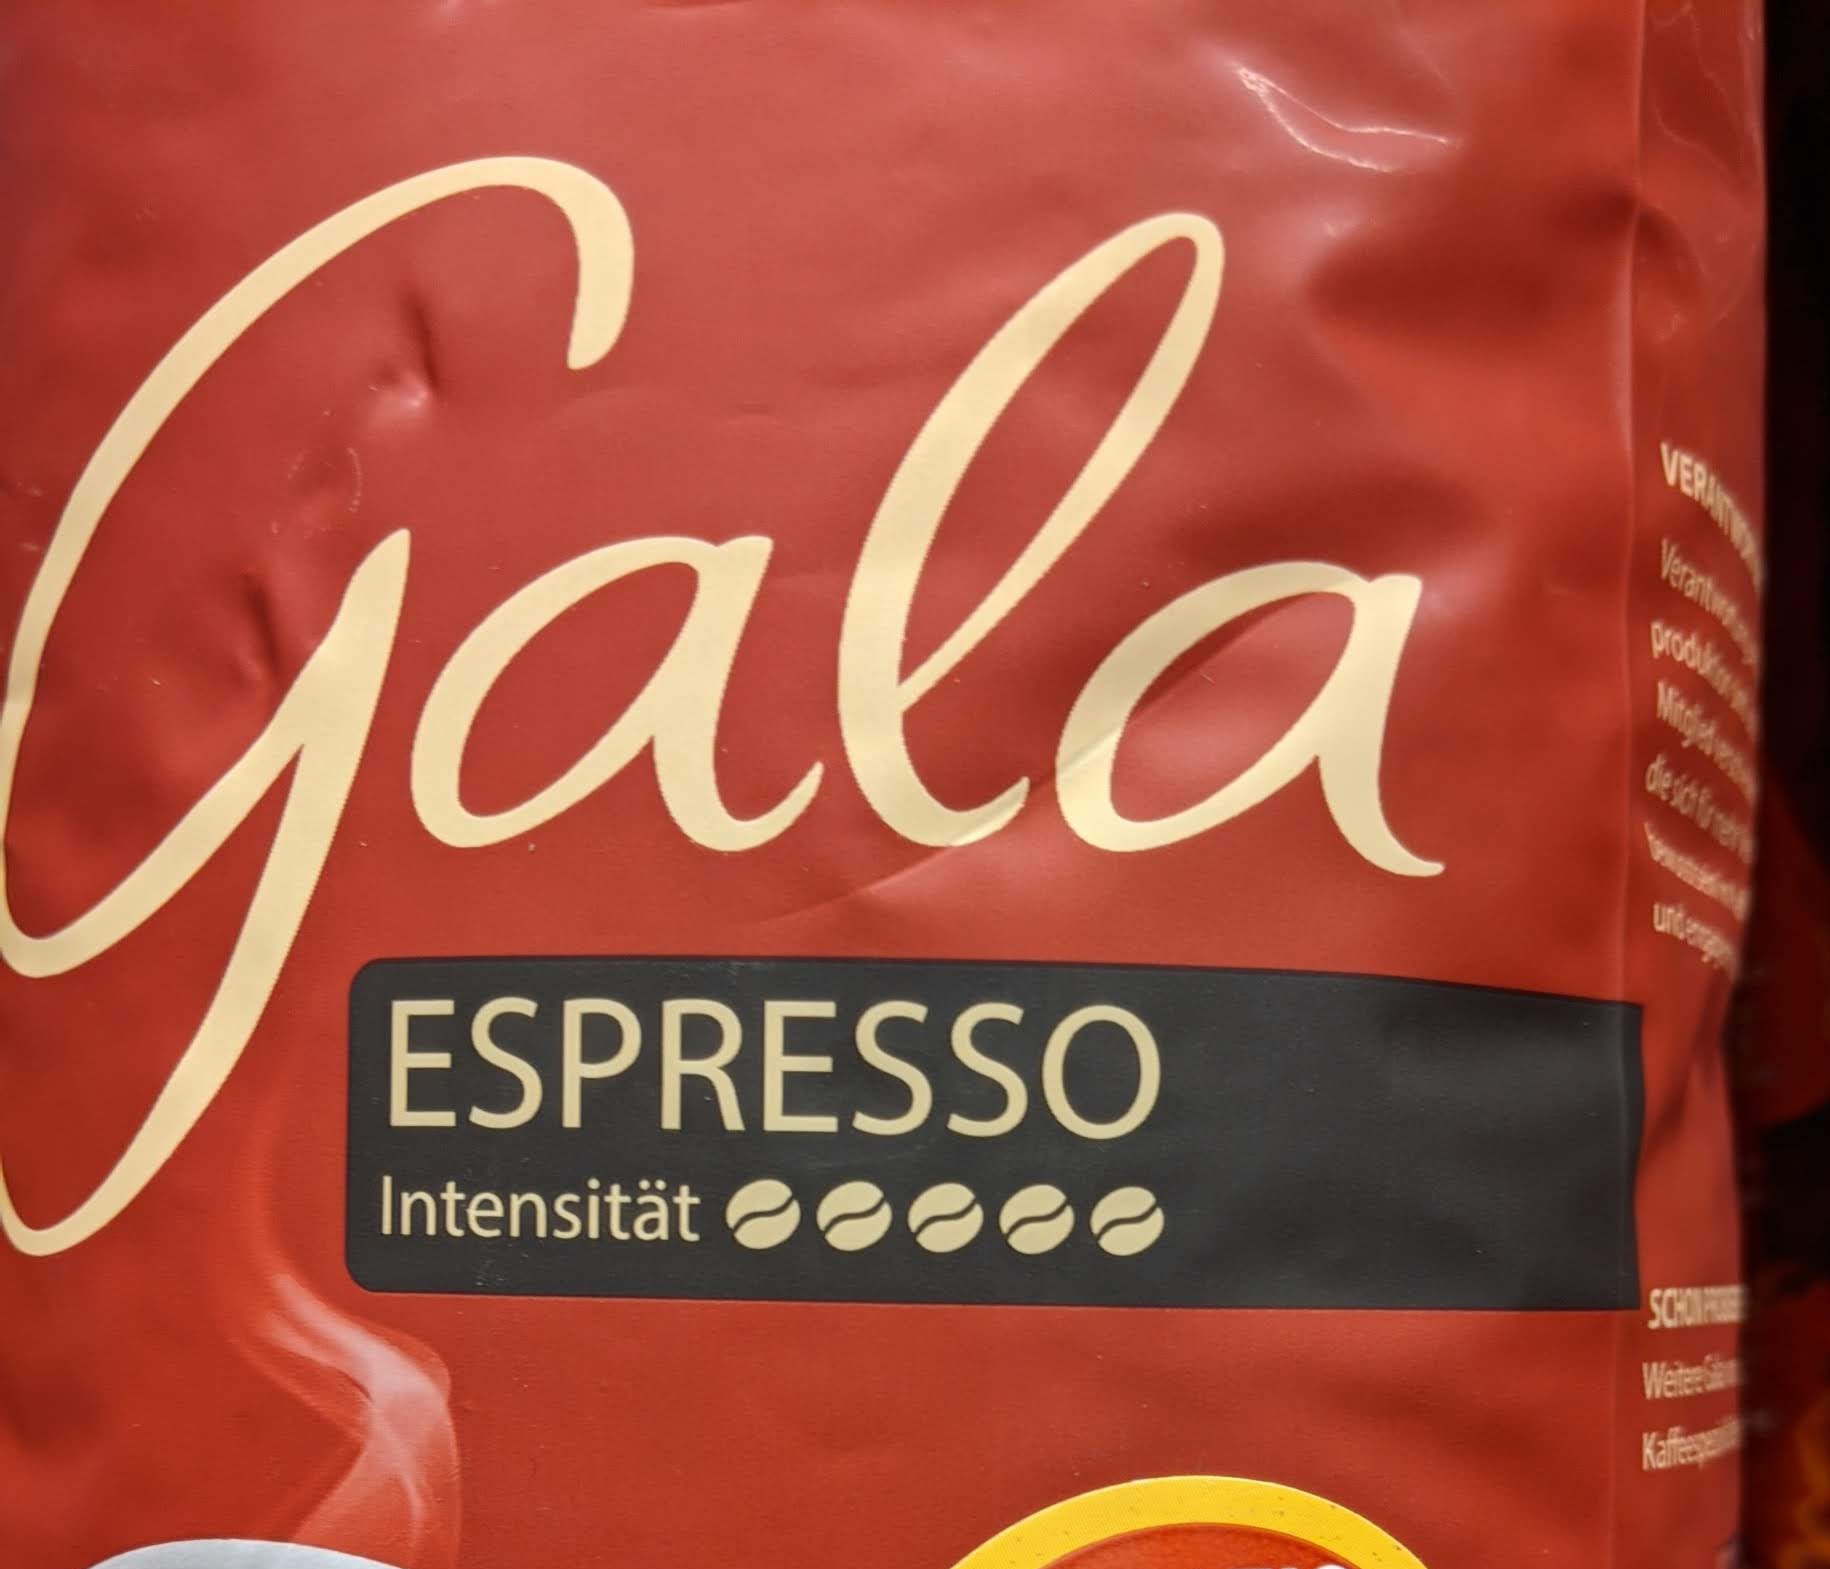 Gala von Eduscho: Kaffee kaufen, Kassenbon hochladen, E-Lastenfahrrad gewinnen